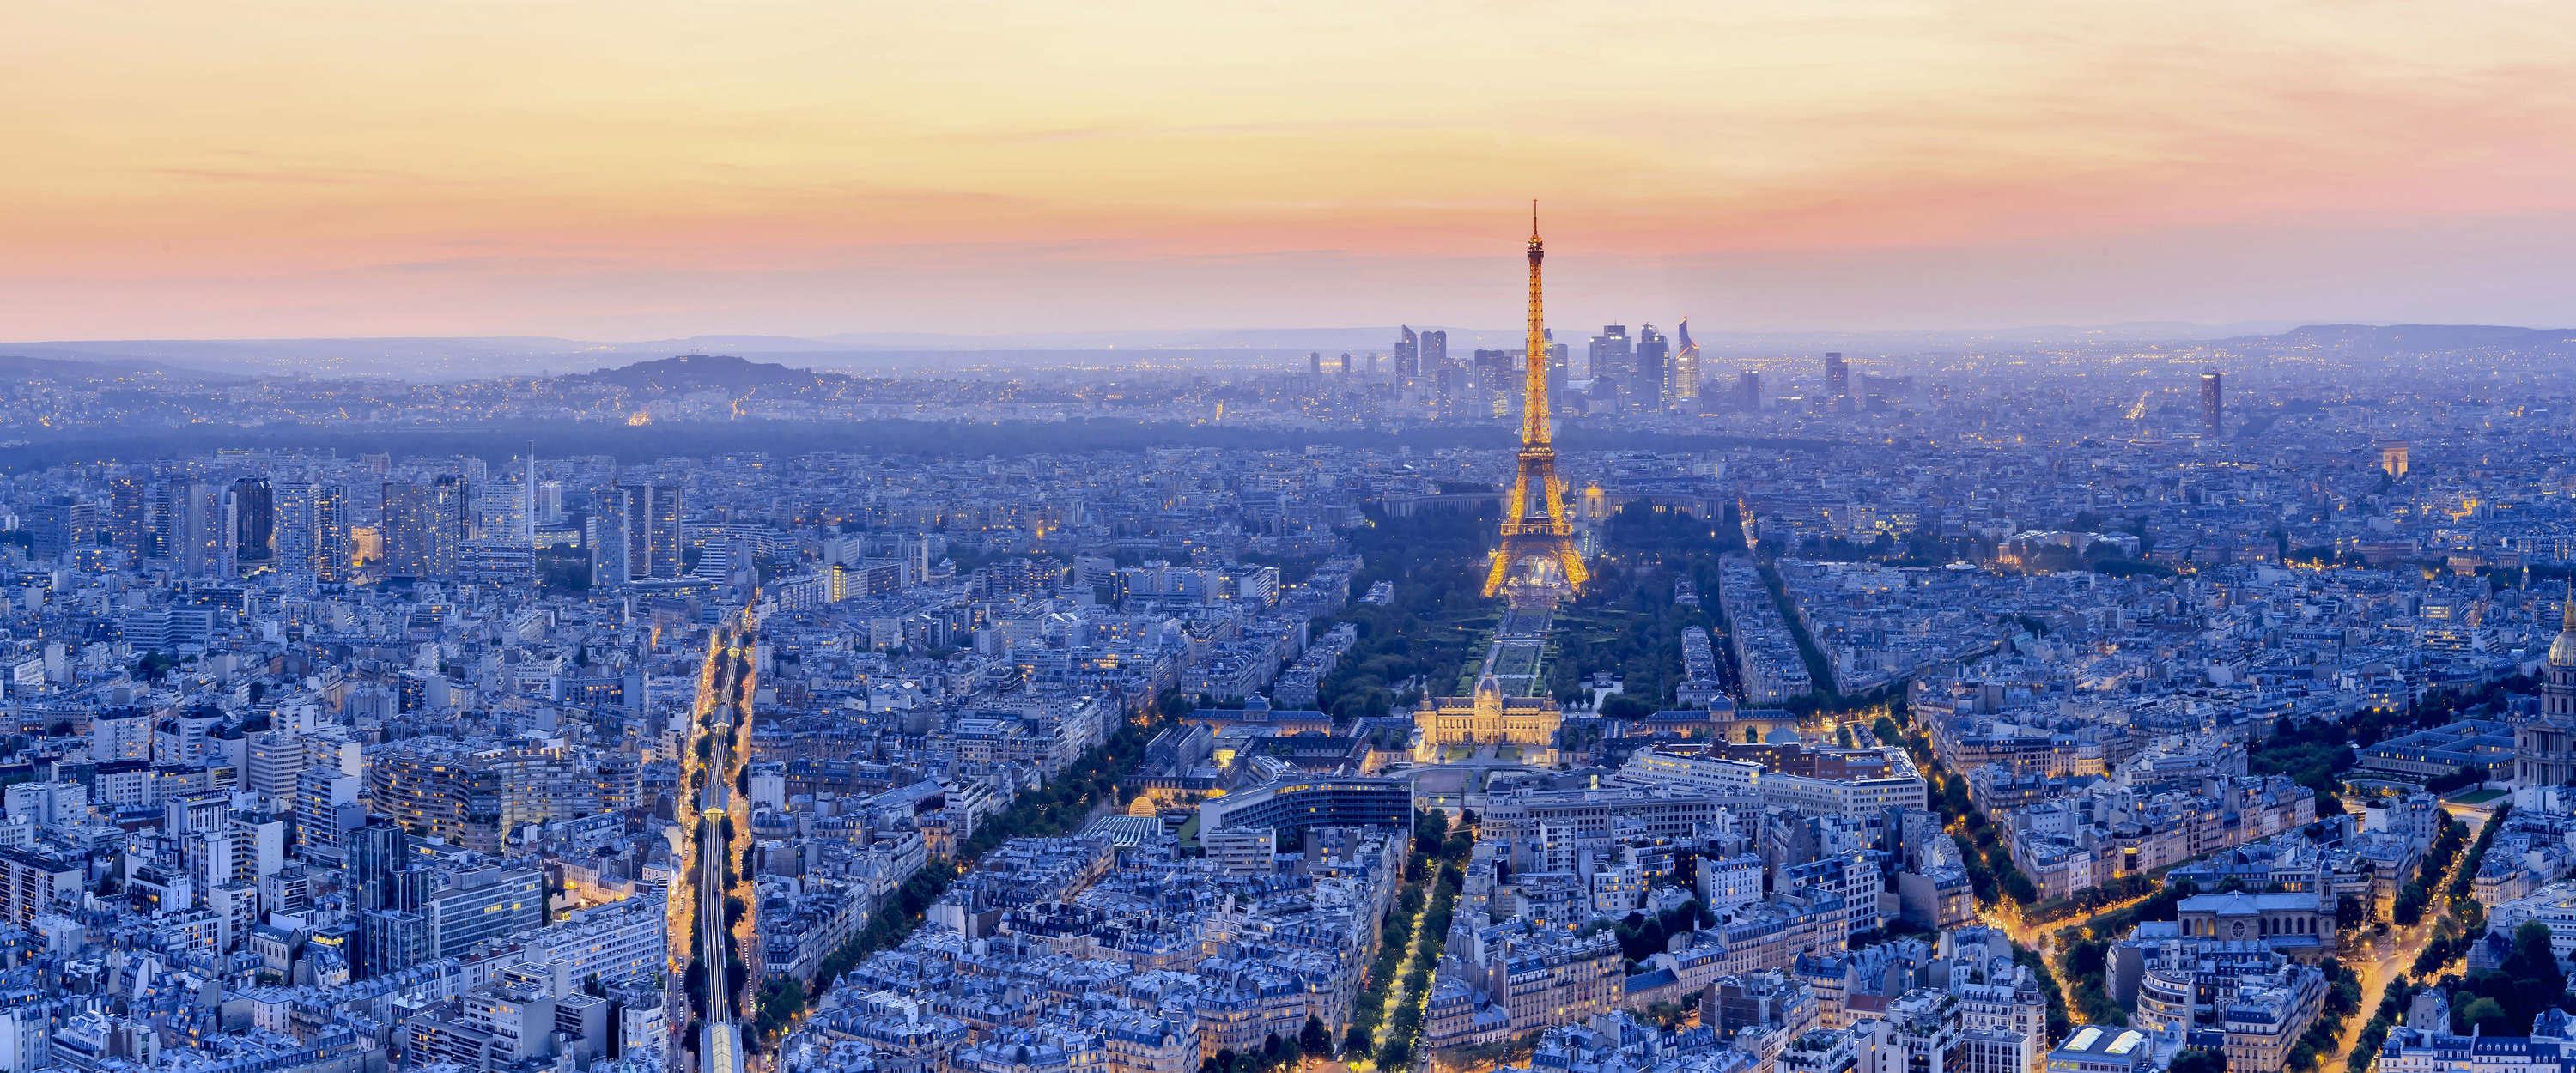             Muurschildering Parijs gloeit metropool bij dageraad
        